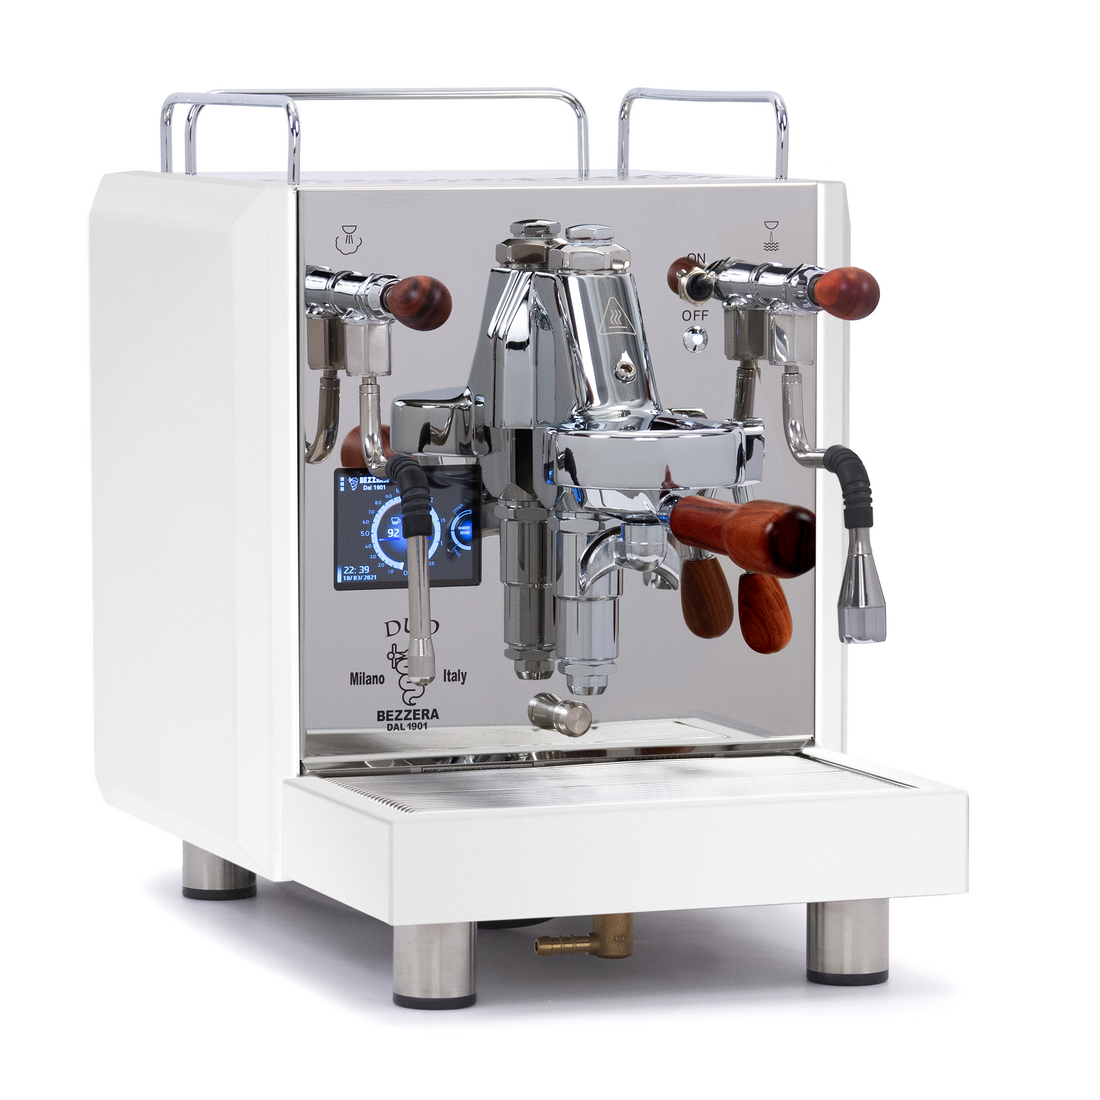 Bezzera DUO MN Dual Boiler Espresso Machine - Total White